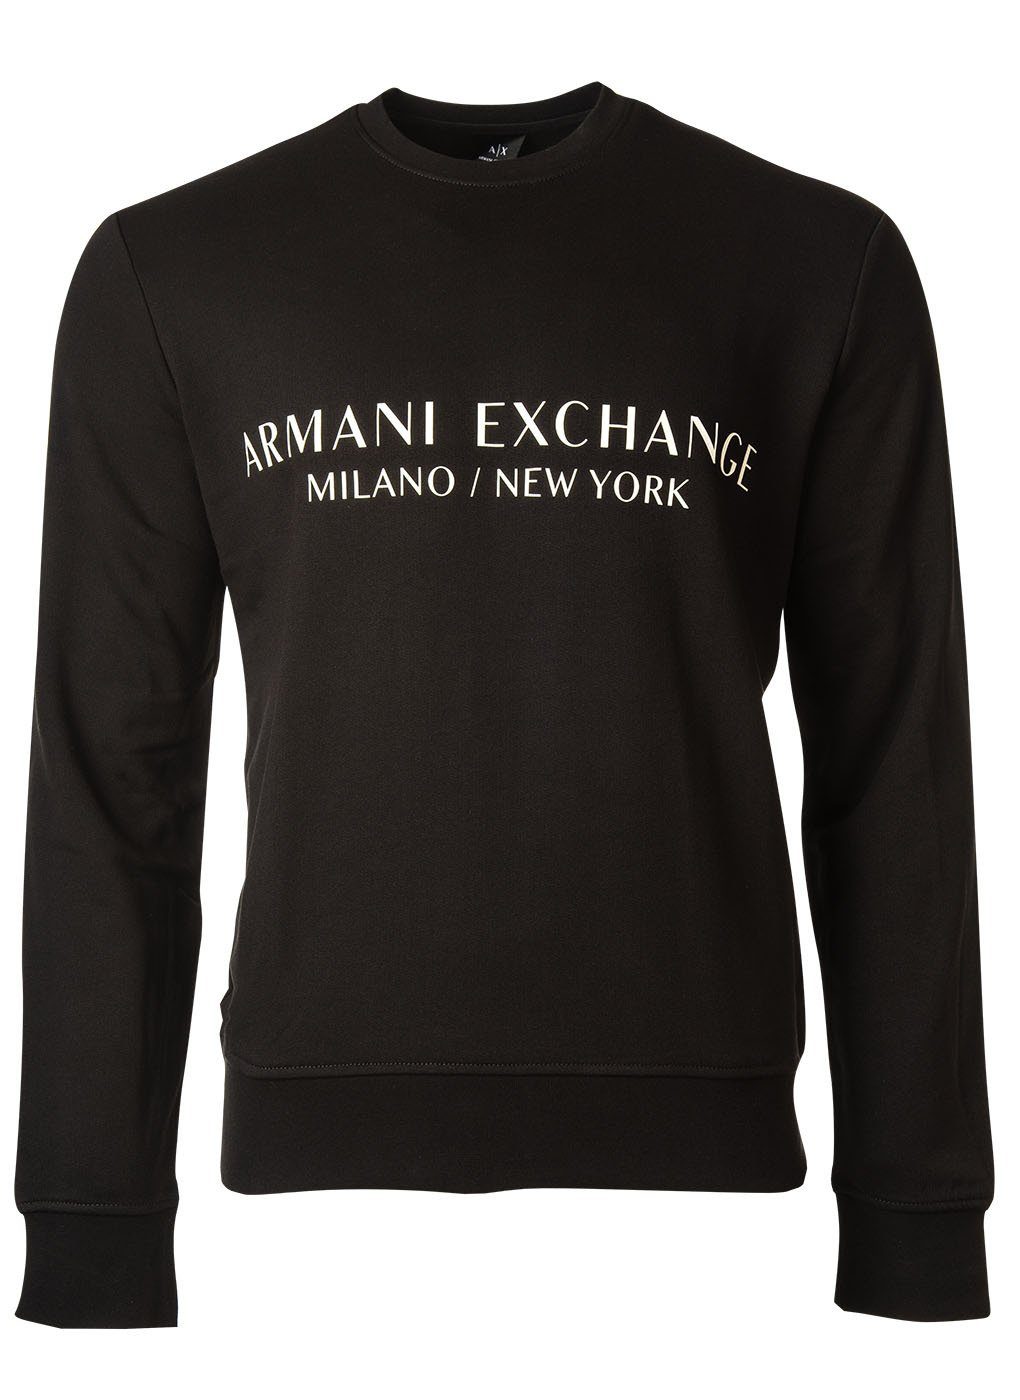 ARMANI EXCHANGE Sweatshirt Herren Sweatshirt - Schwarz Logo Pullover